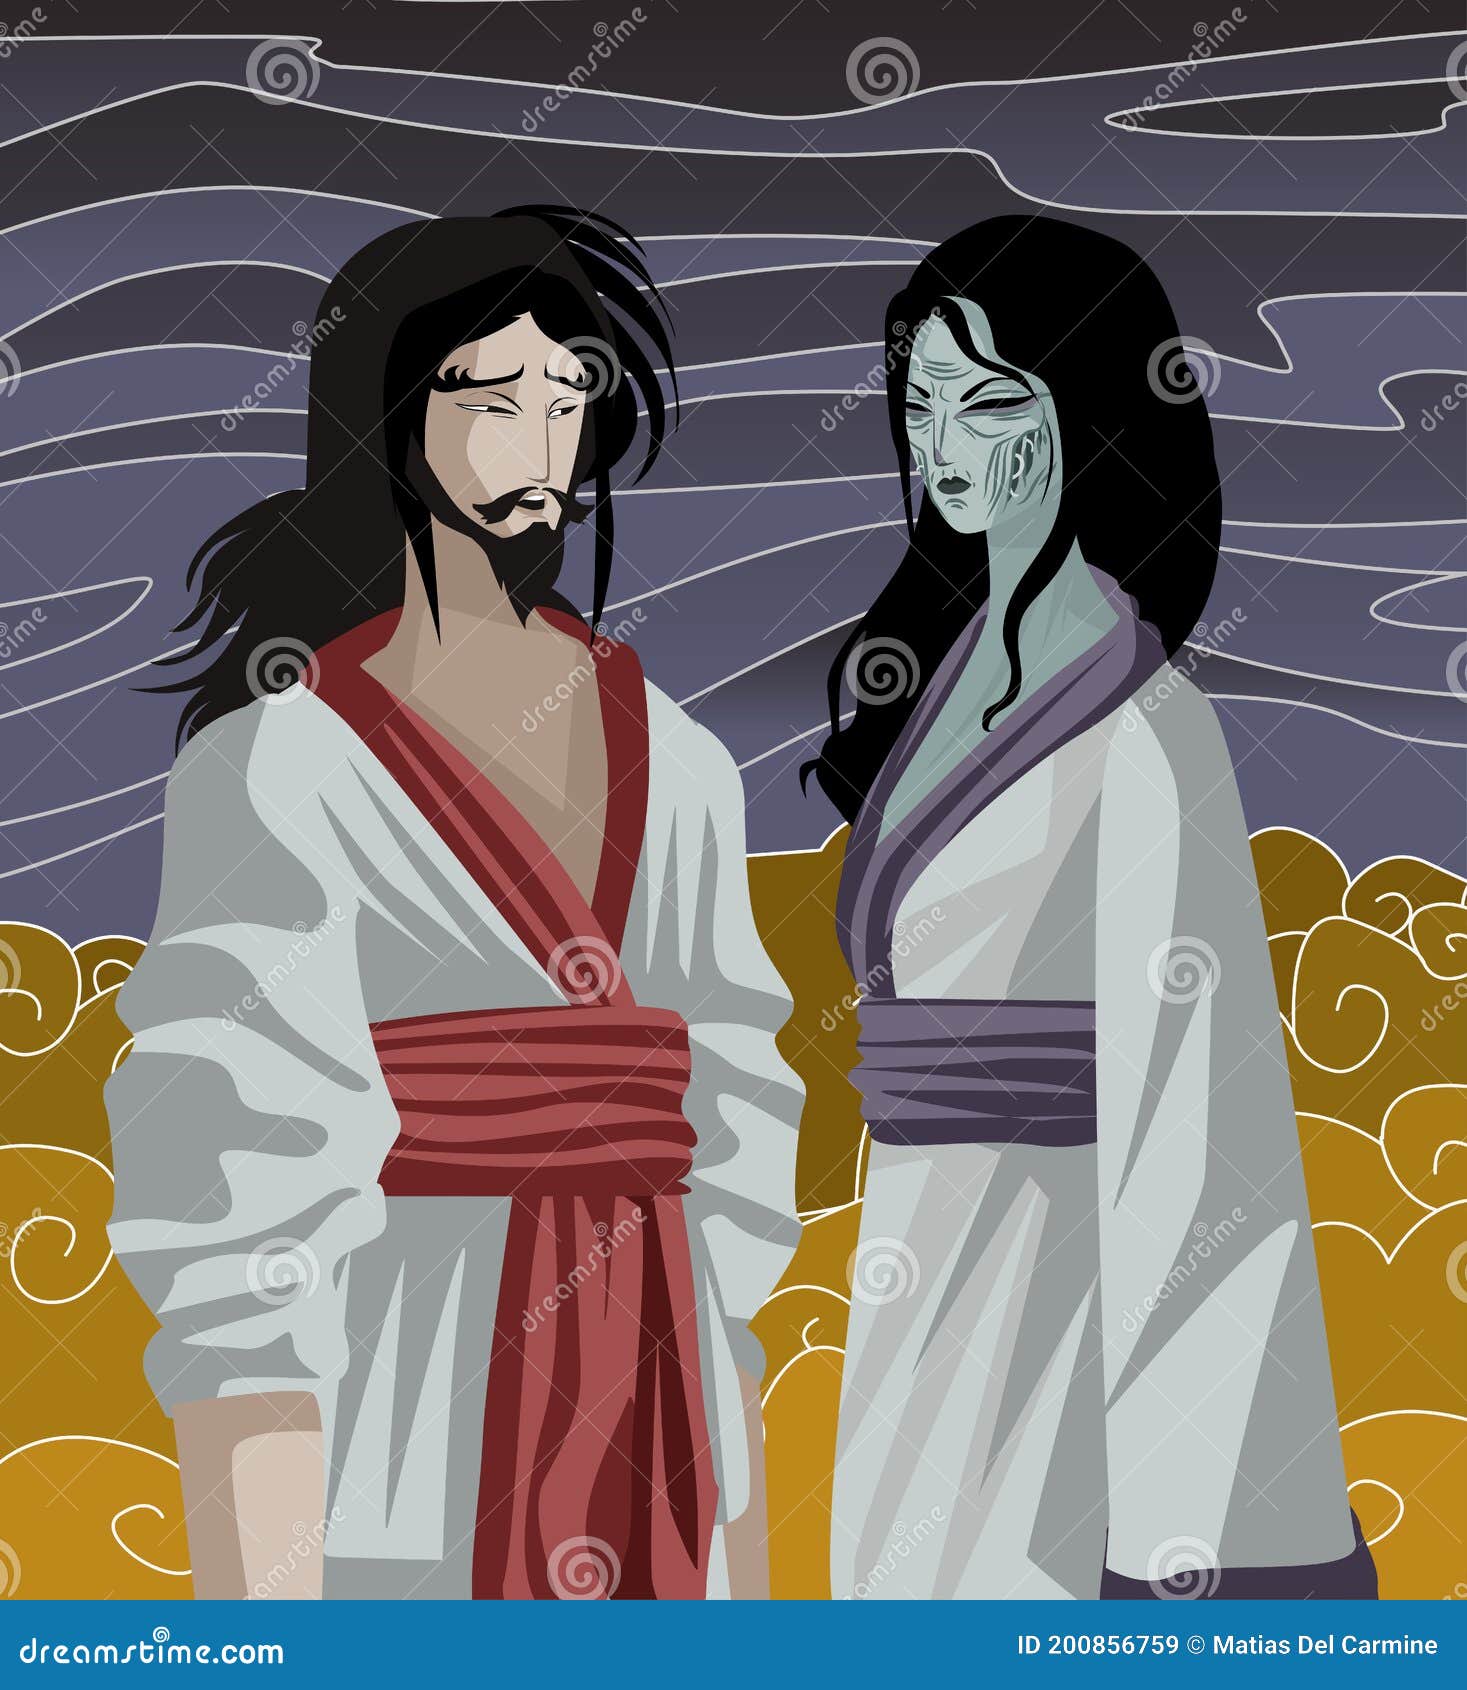 izanami and izanagi japan mythology tale in the underworld